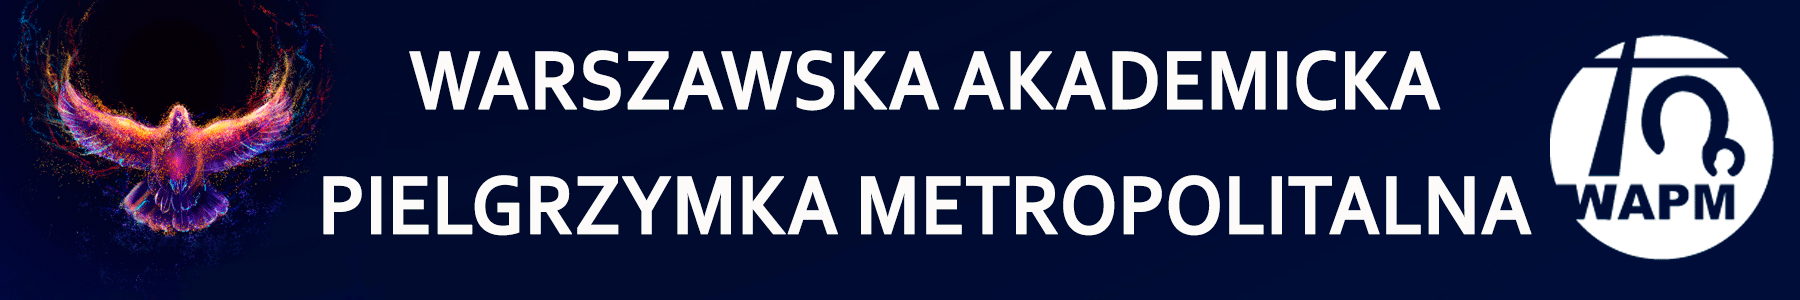 Warszawska Akademicka Pielgrzymka Metropolitalna